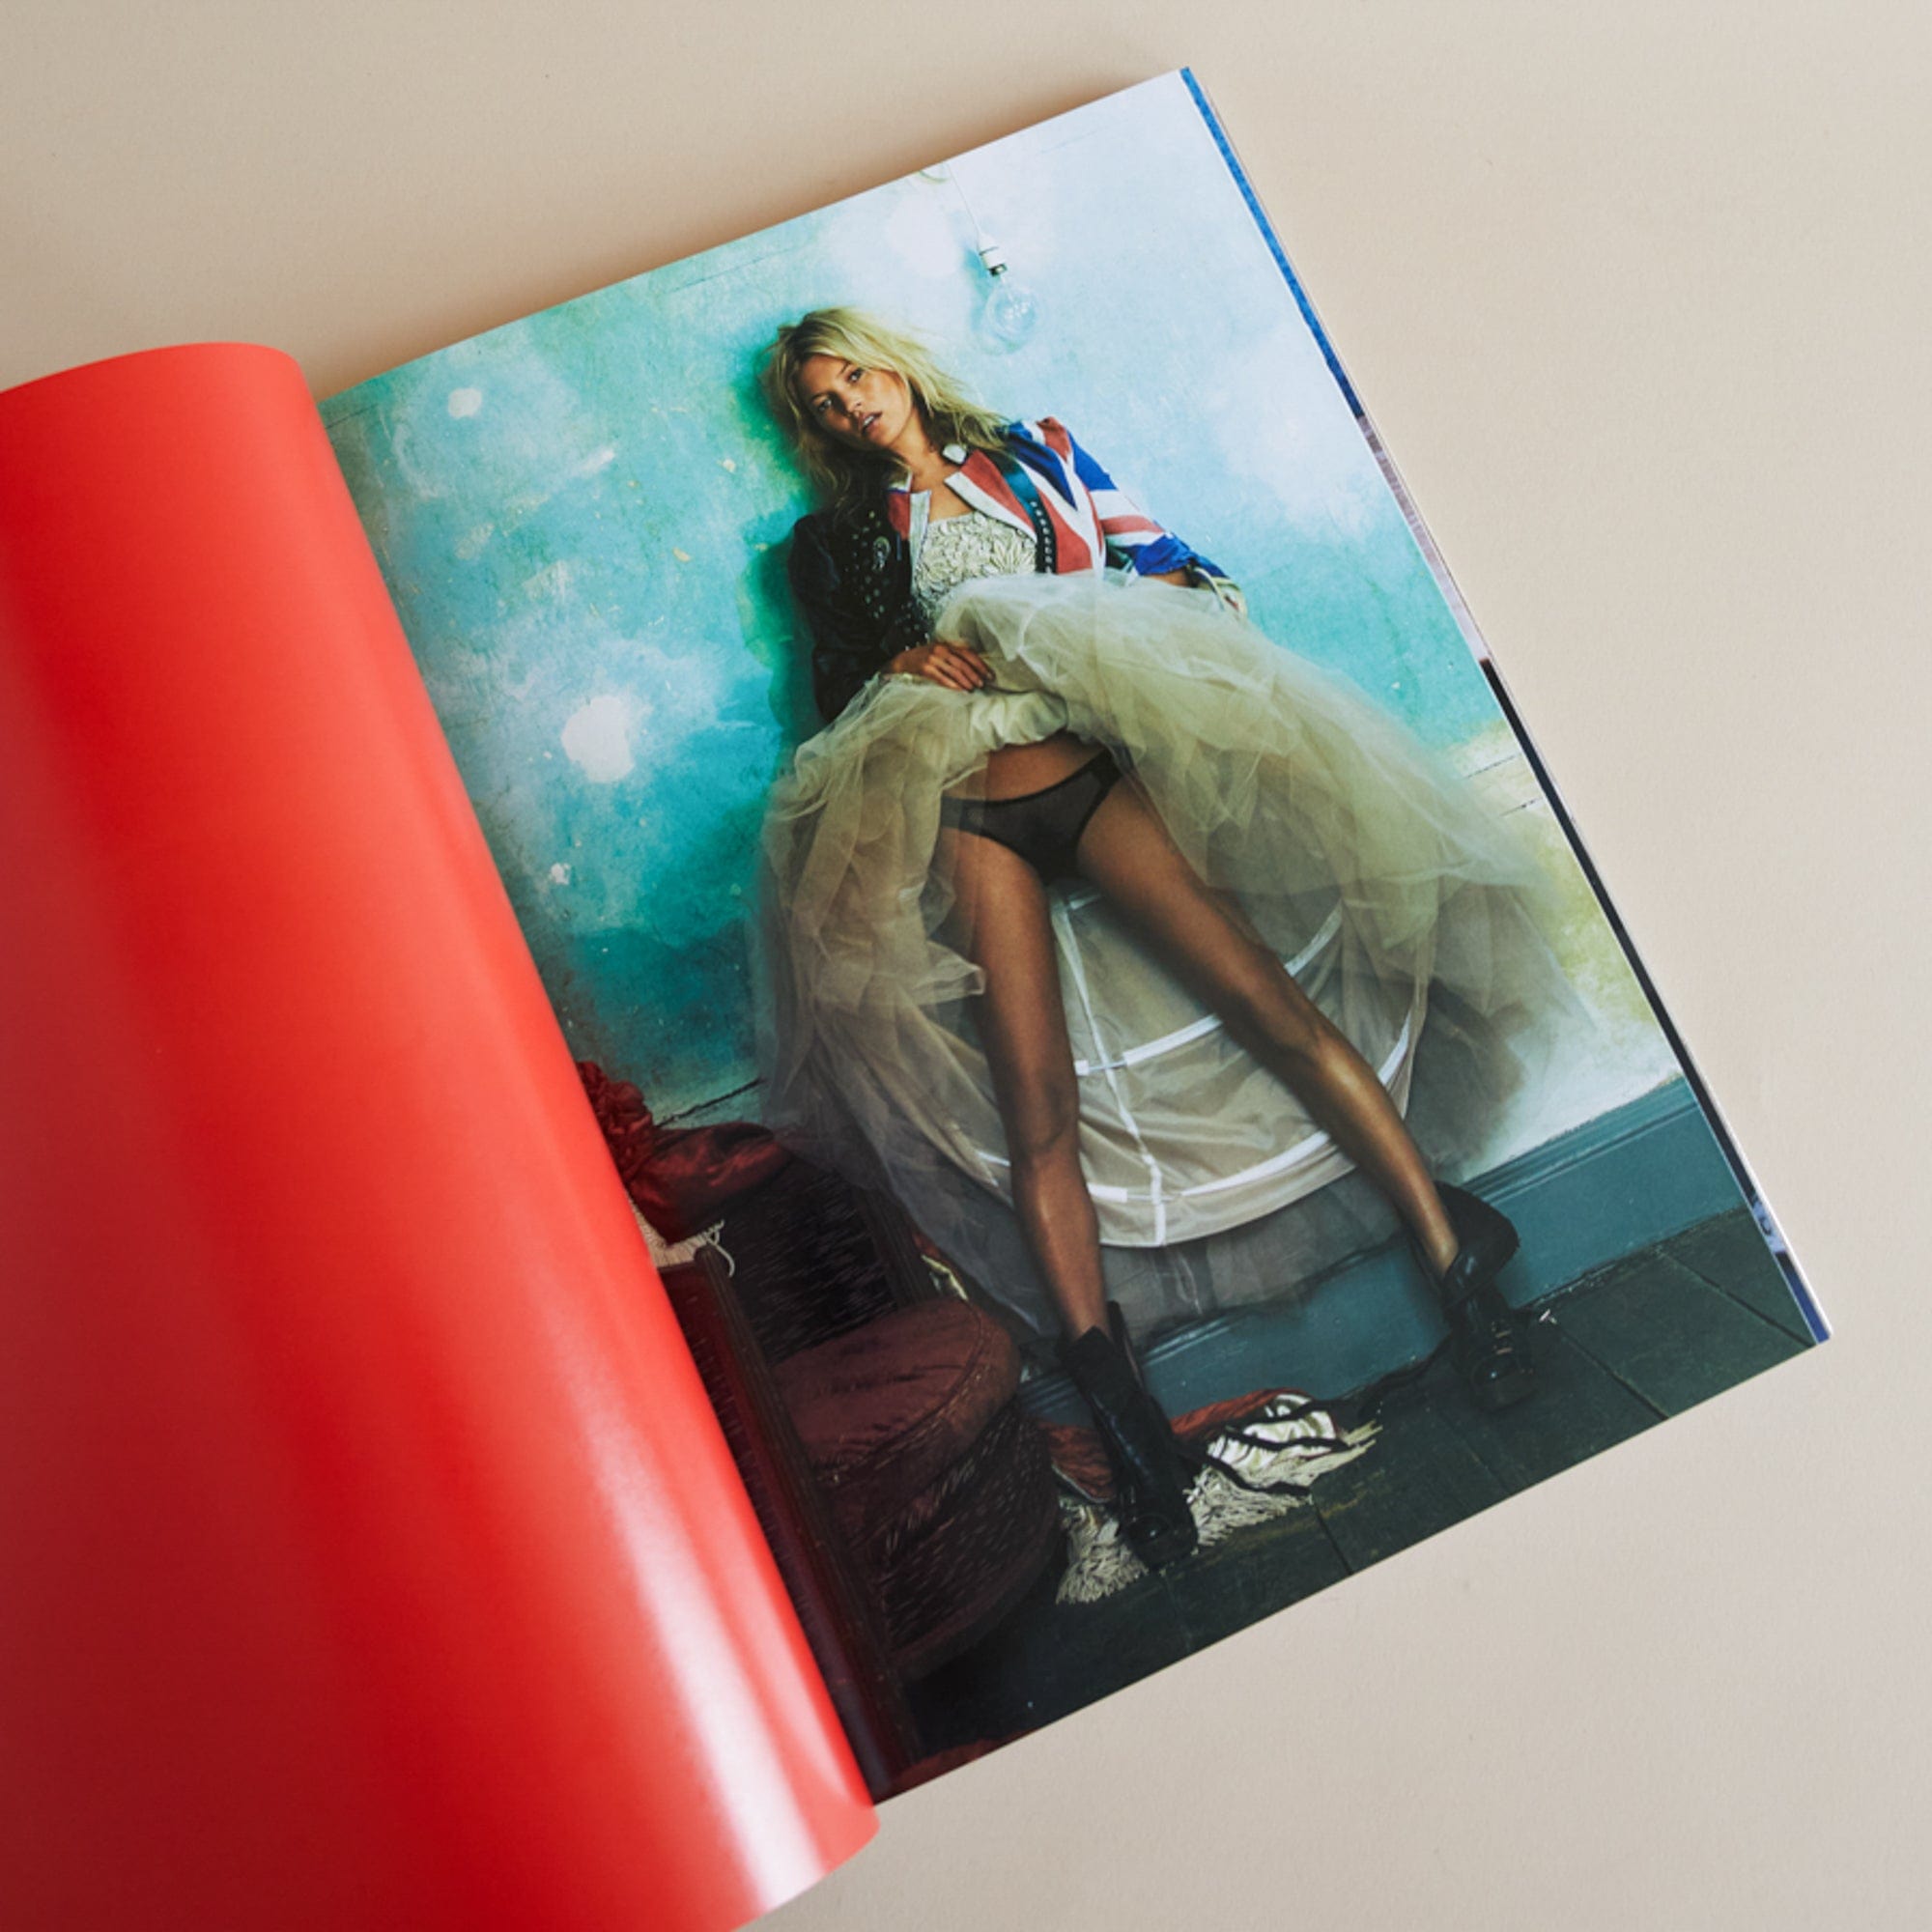 Taschen Design Kate Moss by Mario Testino